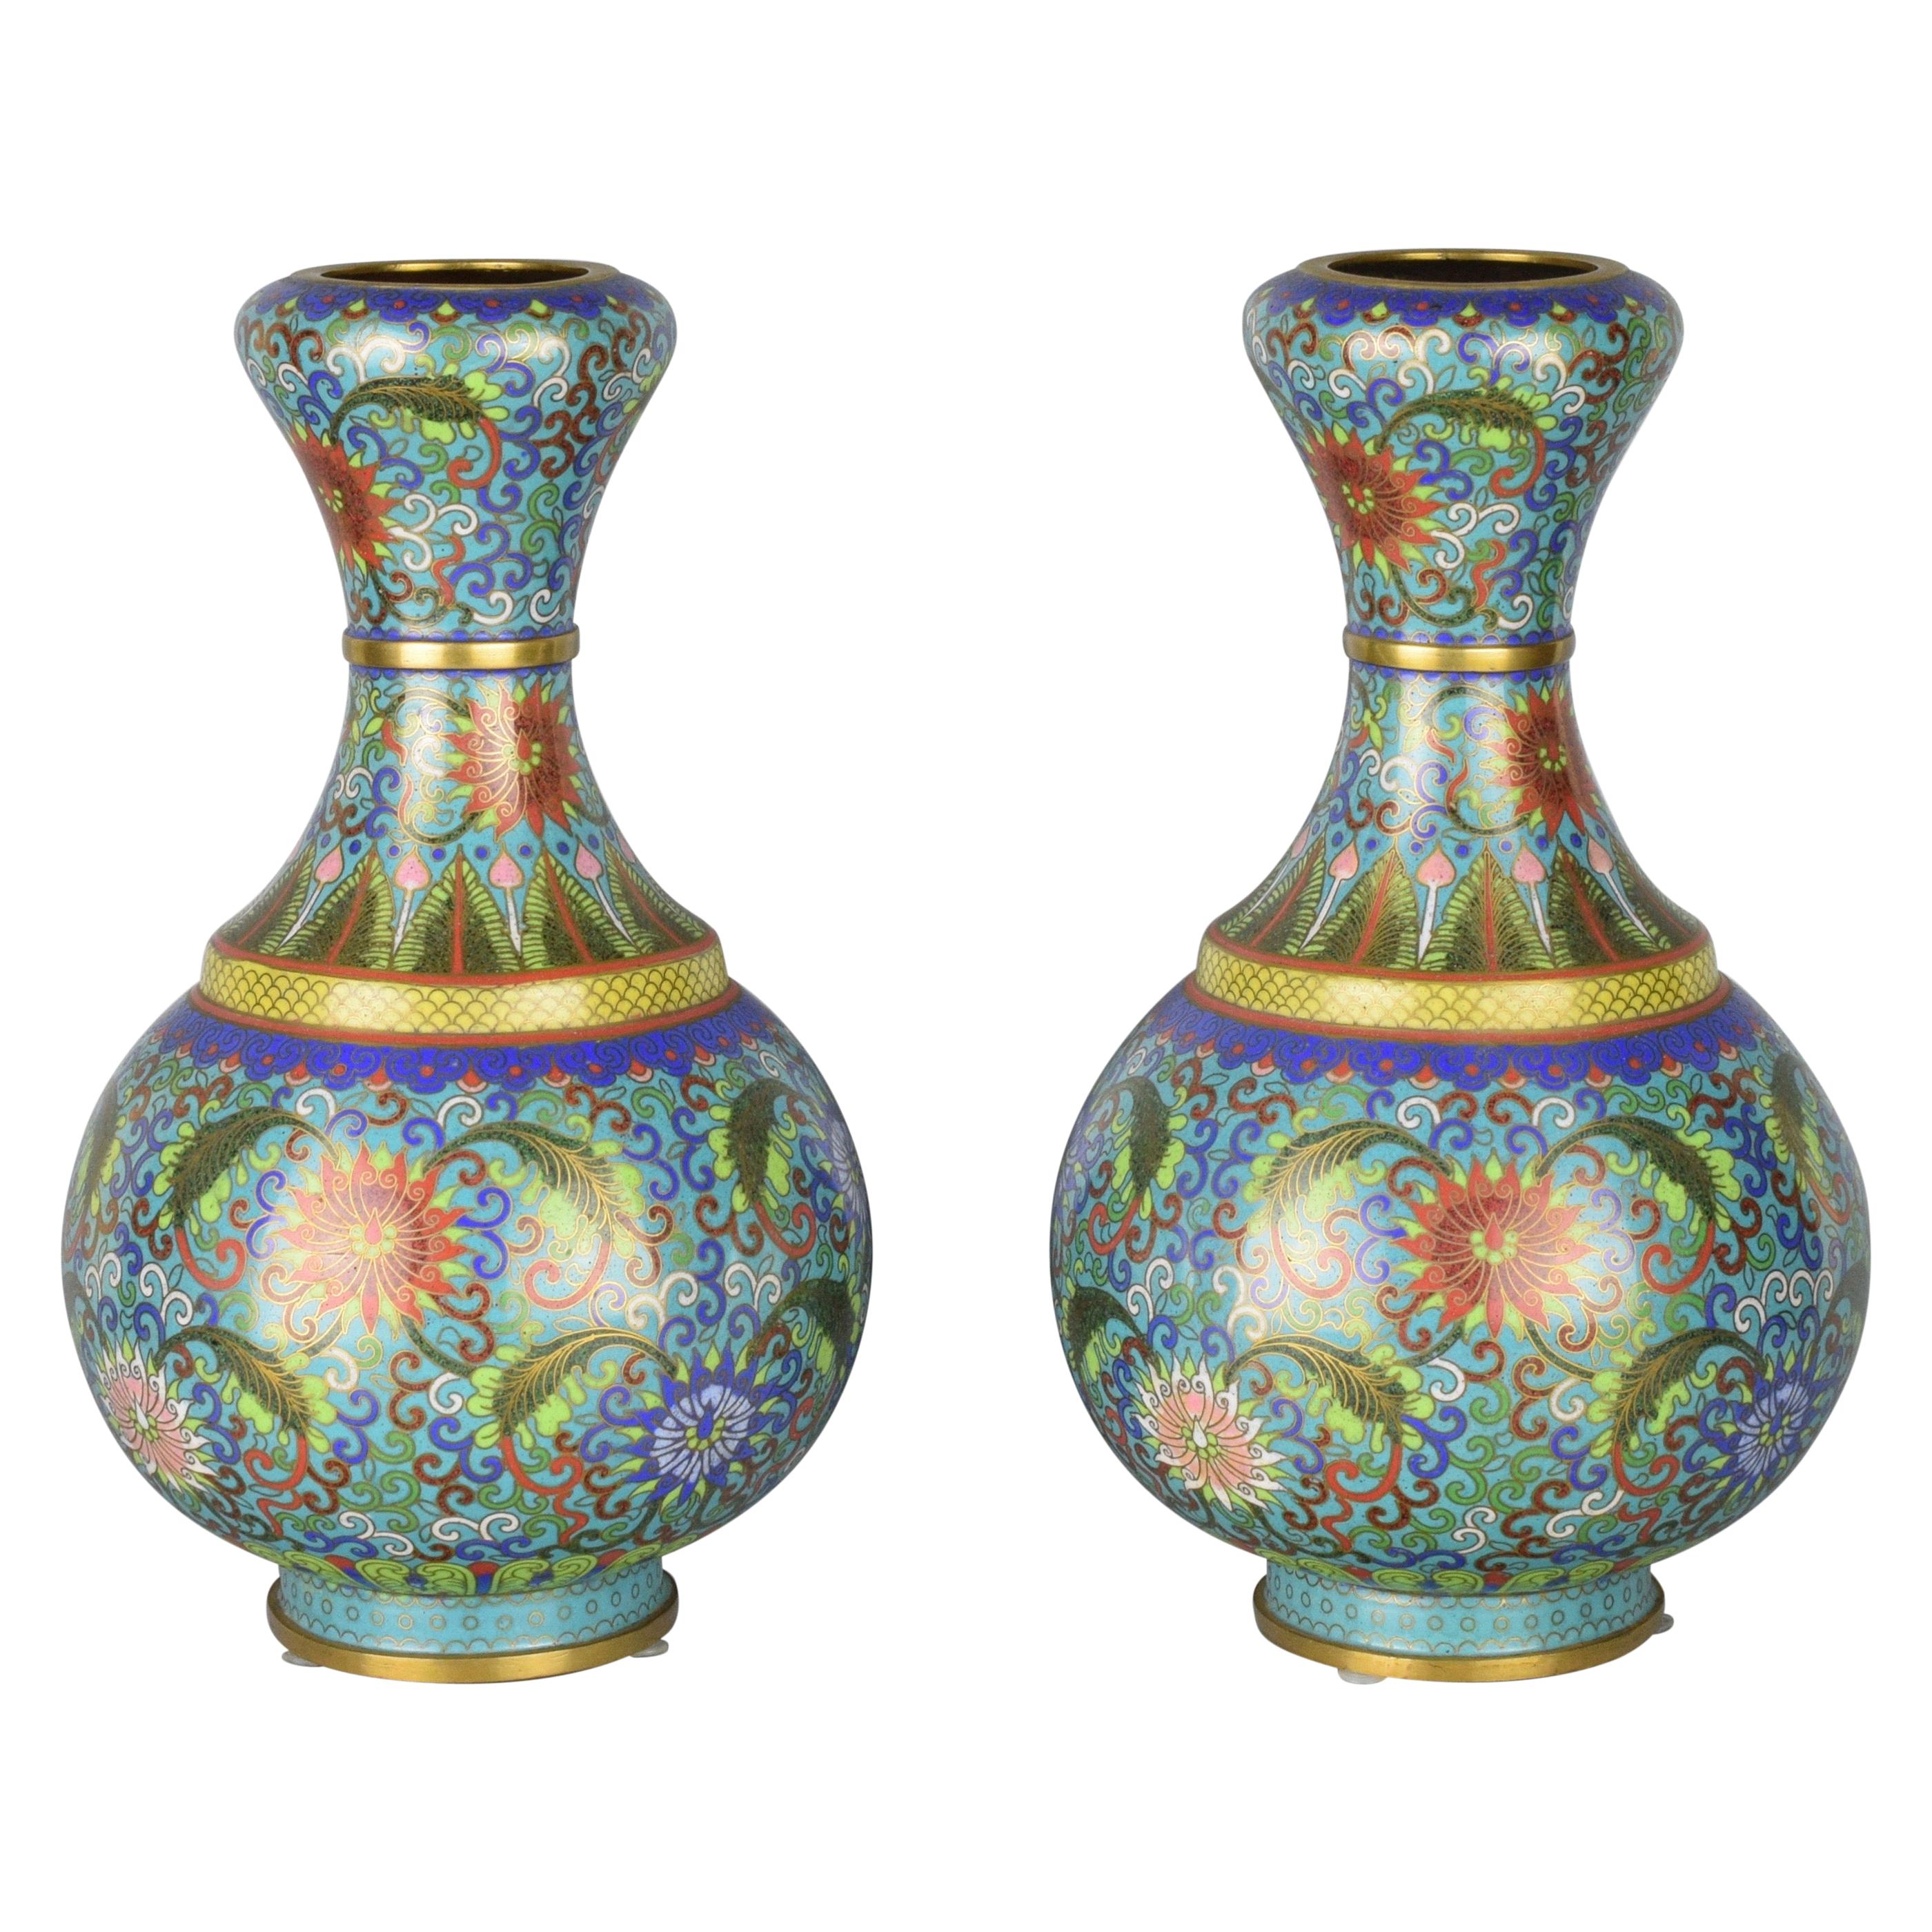 Paire de vases chinois cloisonnés bleus, émaillés et dorés, début du 20e siècle